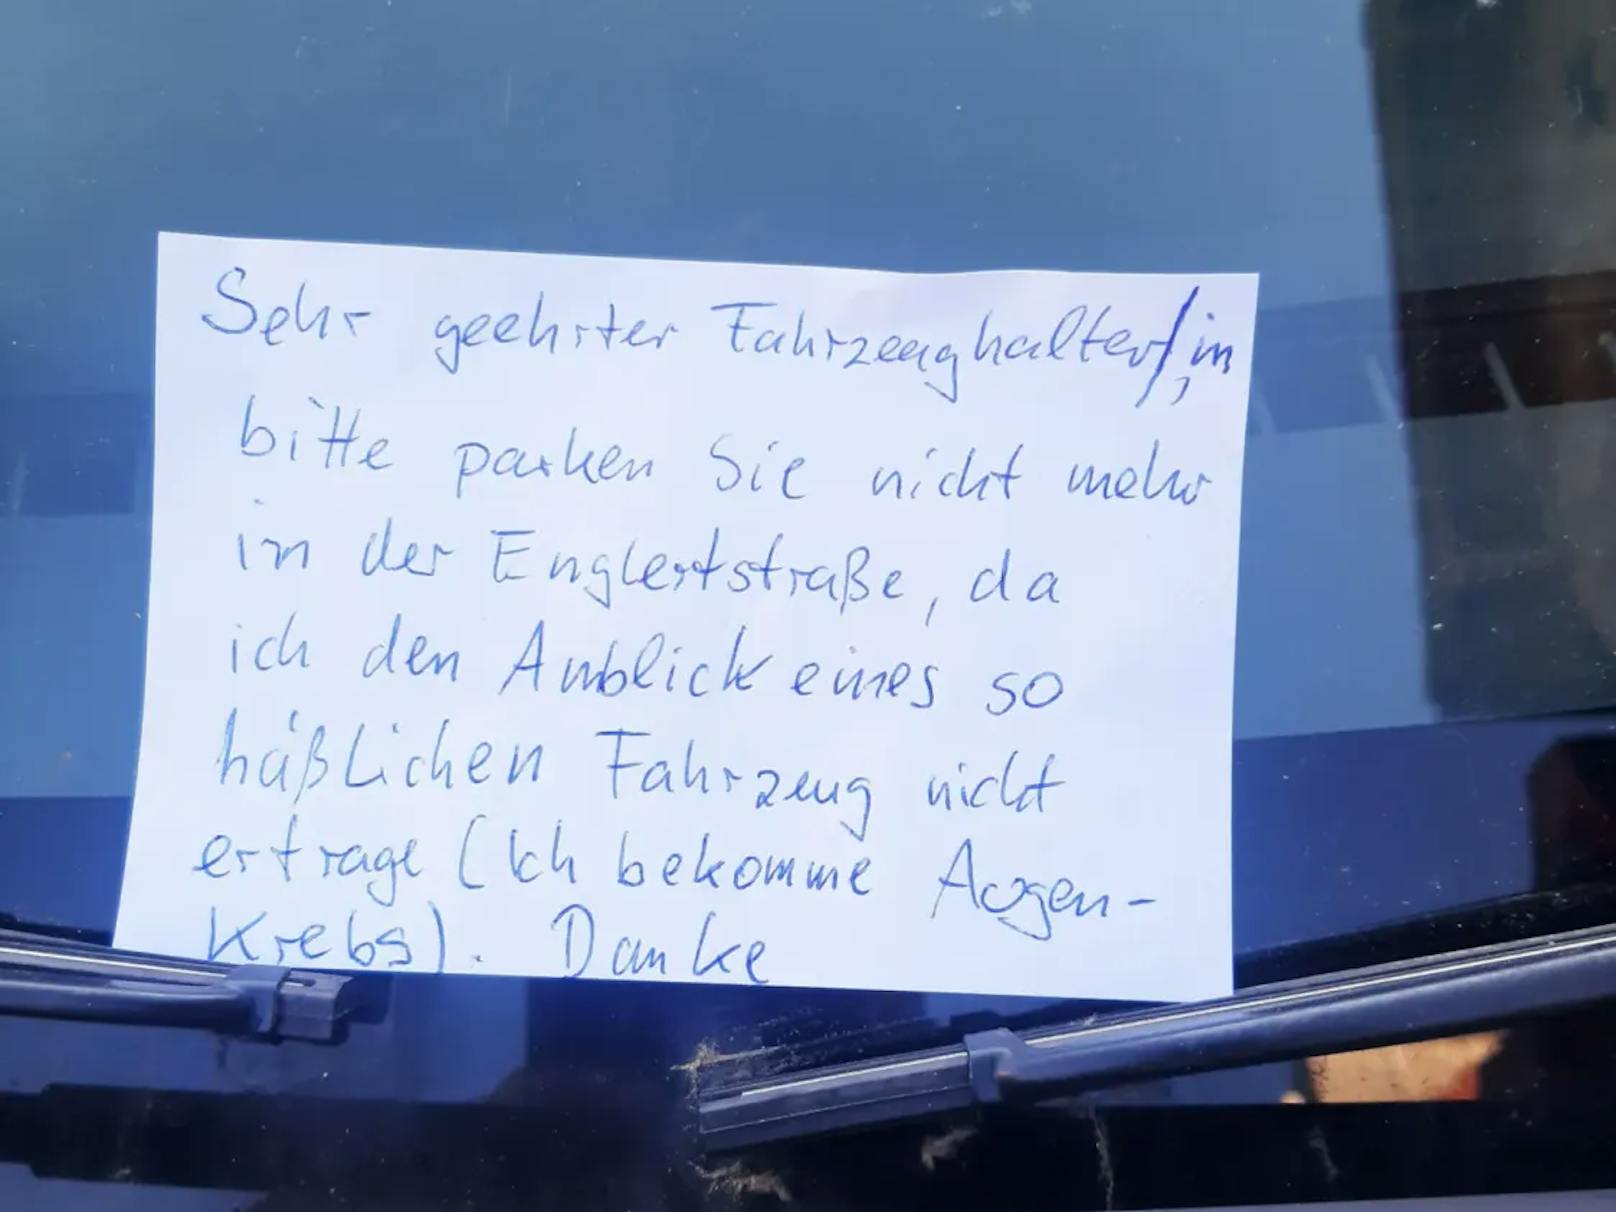 Diesen Zettel hat ein unbekannter User auf Reddit gepostet. Die Bitte, ein Auto aufgrund seiner Hässlichkeit künftig woanders zu parken, sorgt für Belustigung.